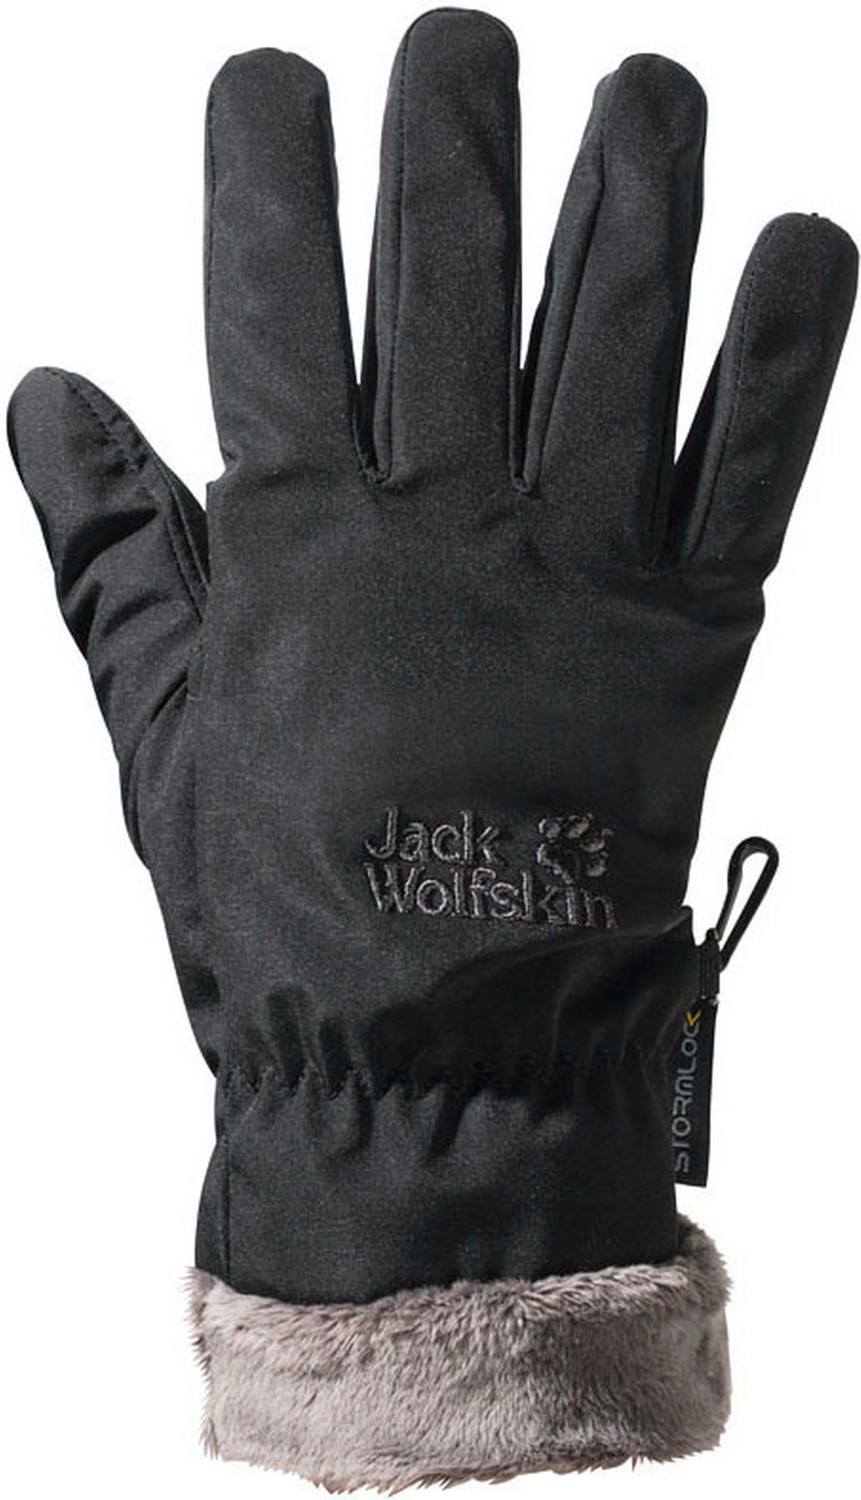 Jack Wolfskin Stormlock Highloft Glove Women black ab € 39,99 |  Preisvergleich bei